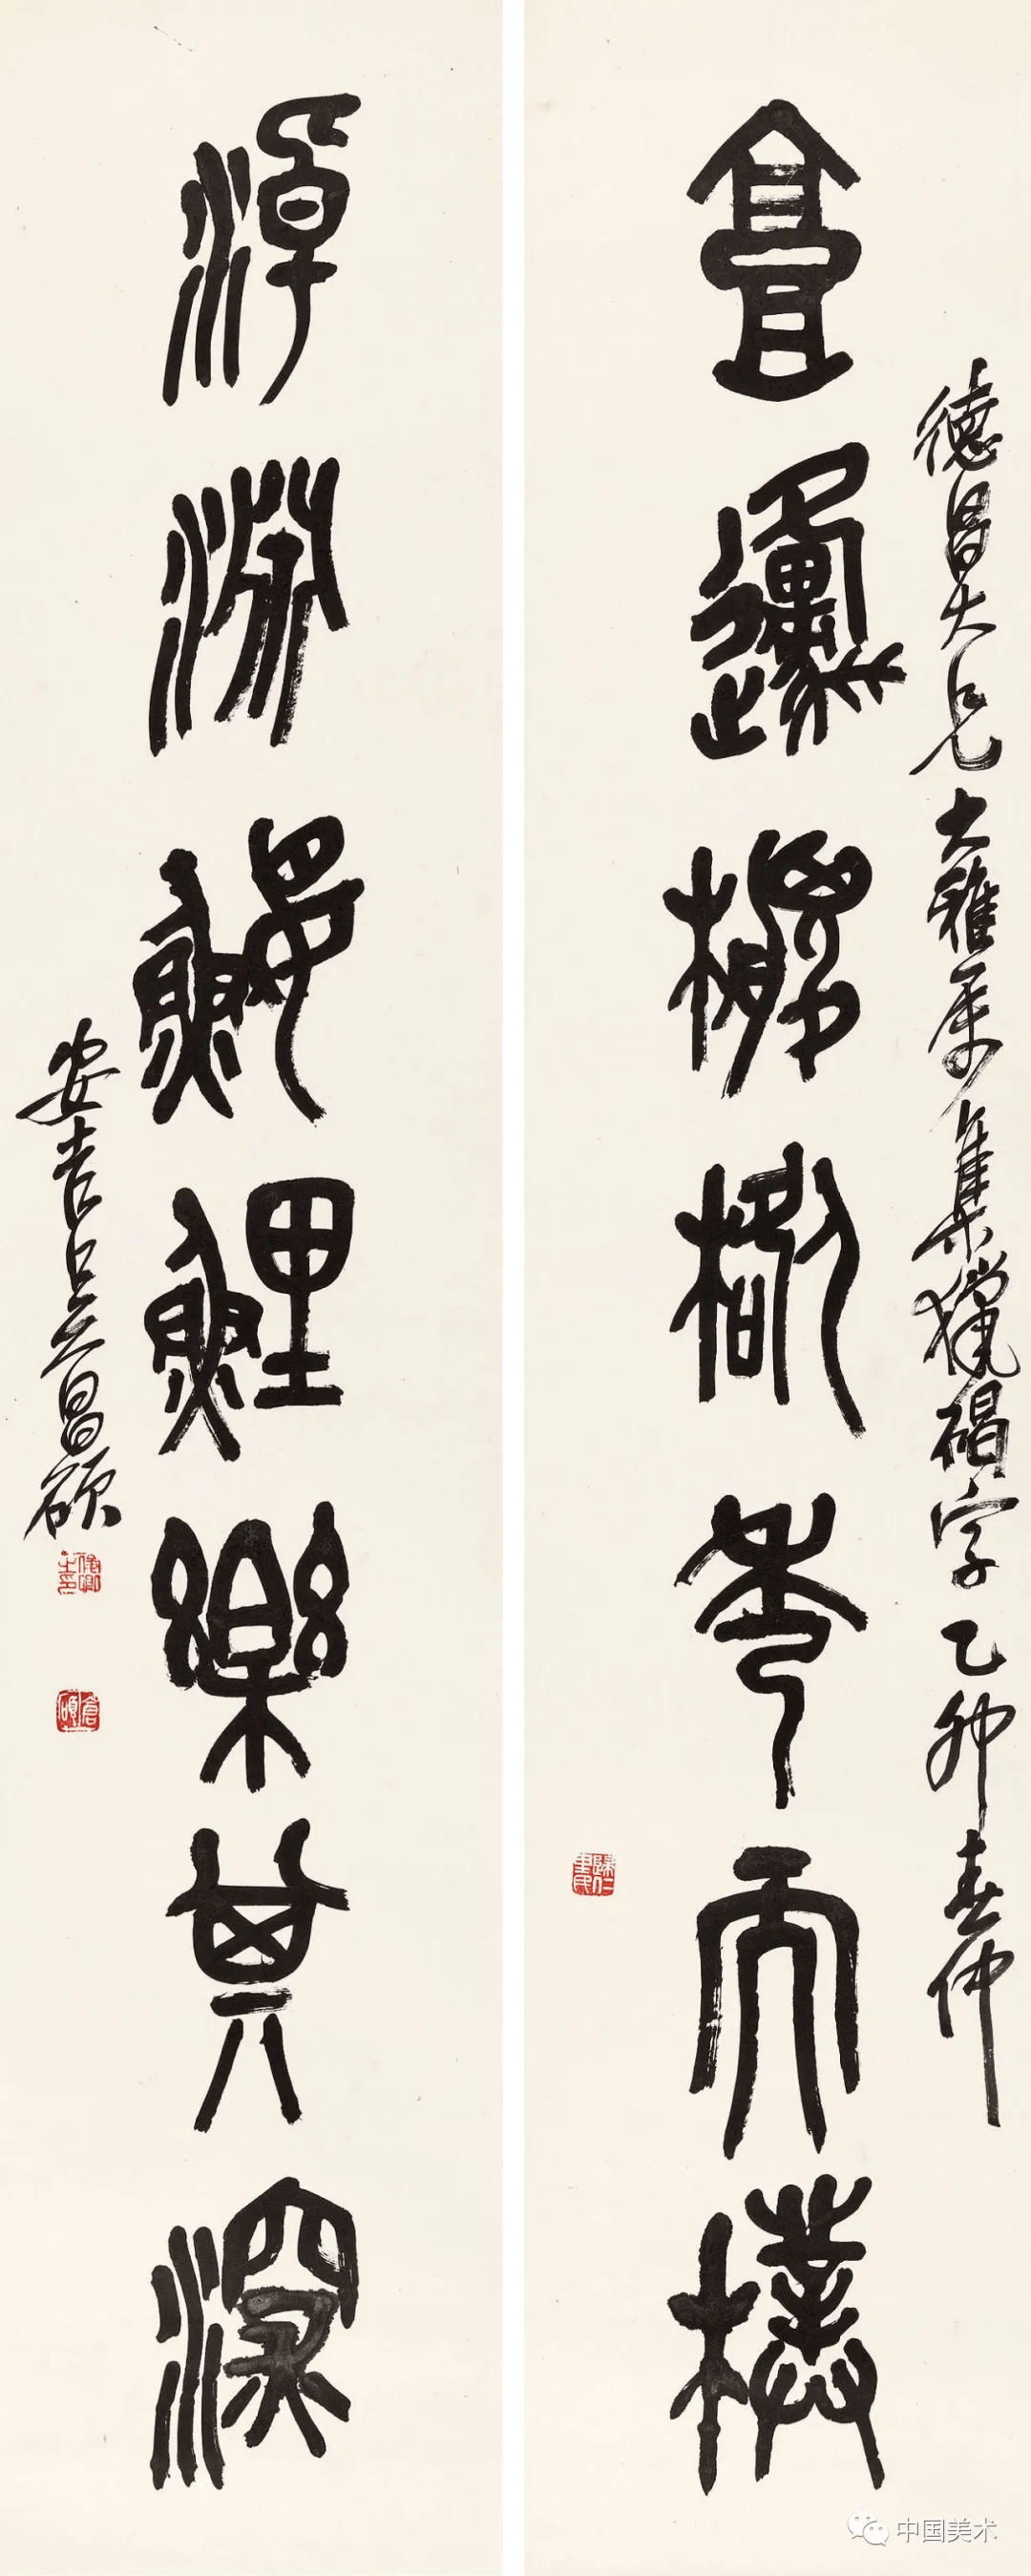 晚年的吴昌硕常集石鼓文字为联,在诸多的传世作品中可以看出,其书法已